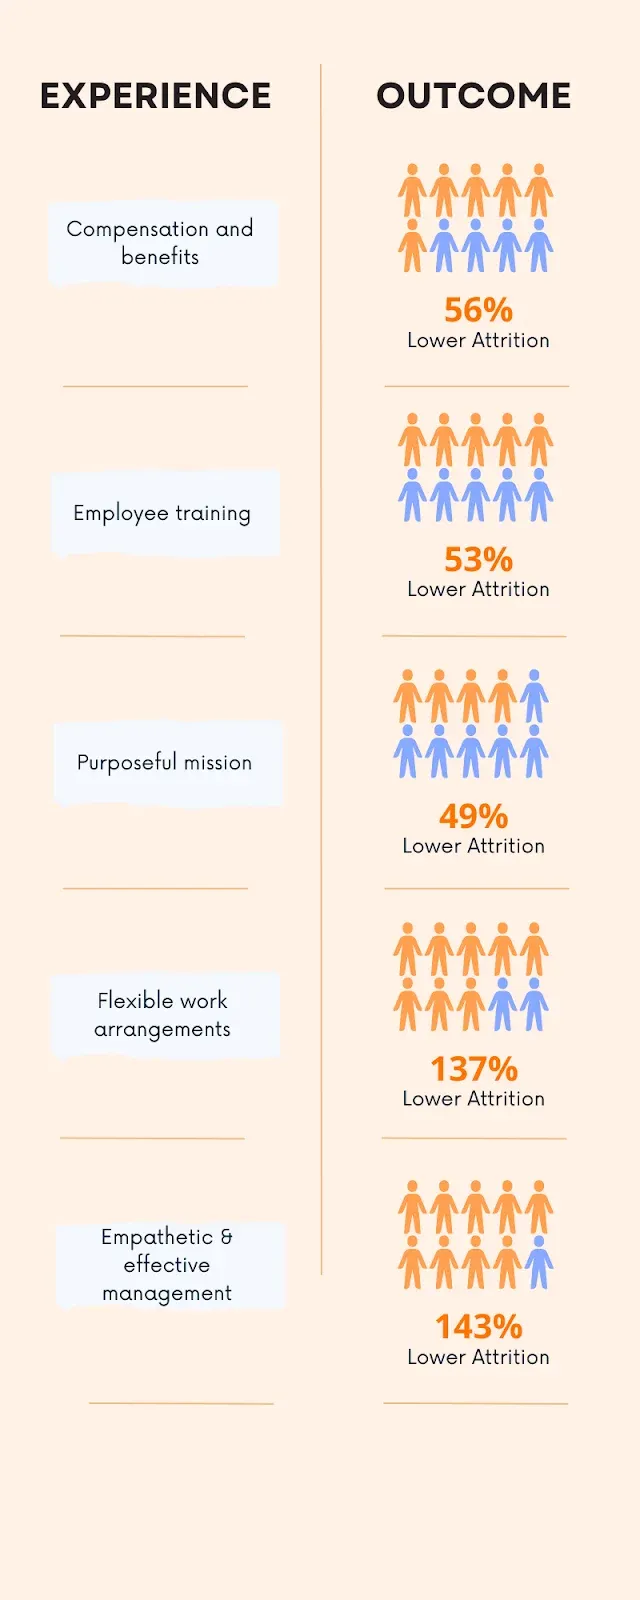 Fonte: LinkedIn, Global Talent Trends 2020impatto aziendale delle strategie di buona esperienza